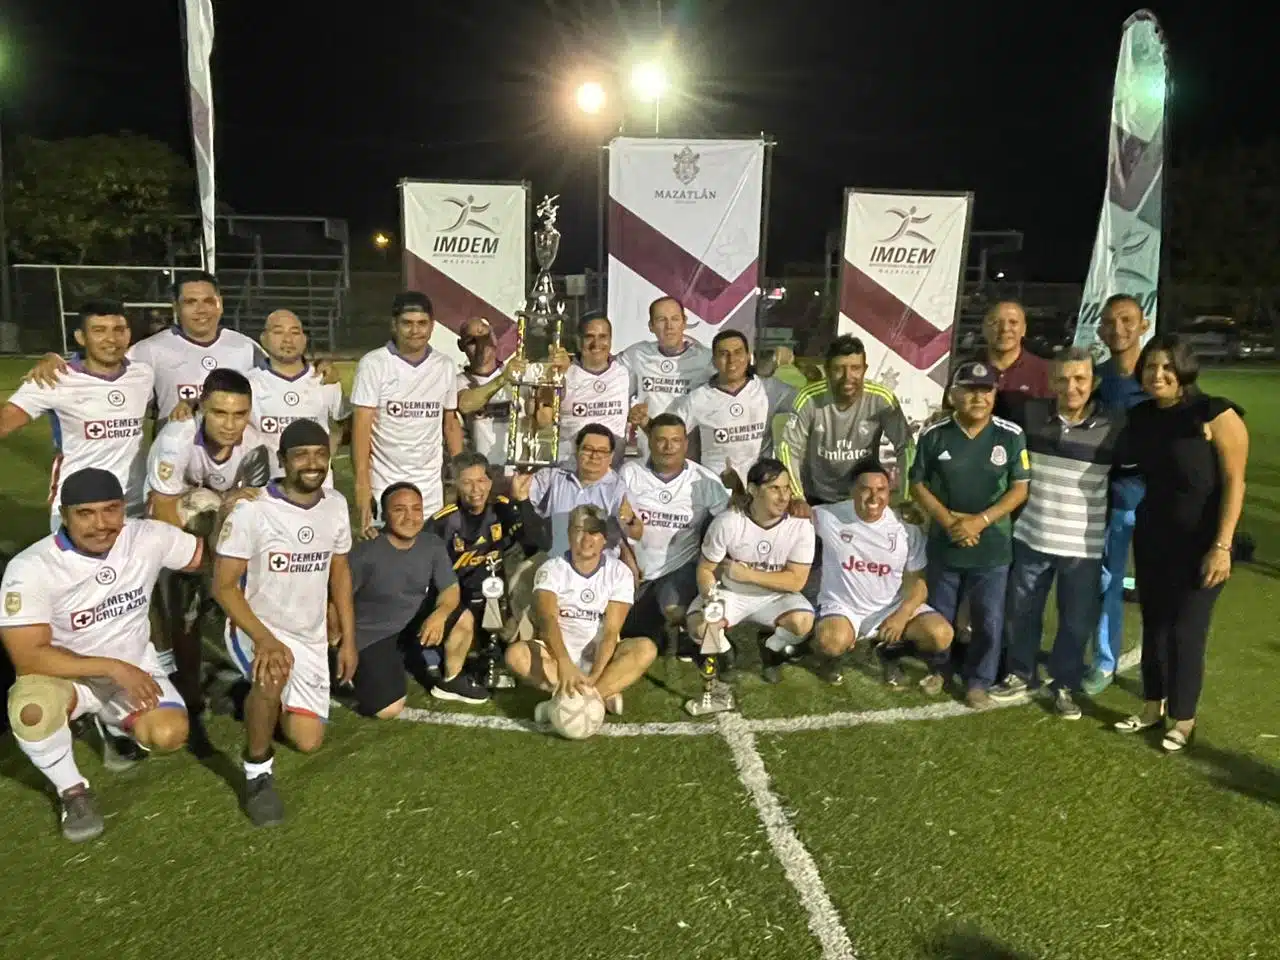 ¡Gran gesto! Enmarca jugada de “fair play” final de futbol en Mazatlán